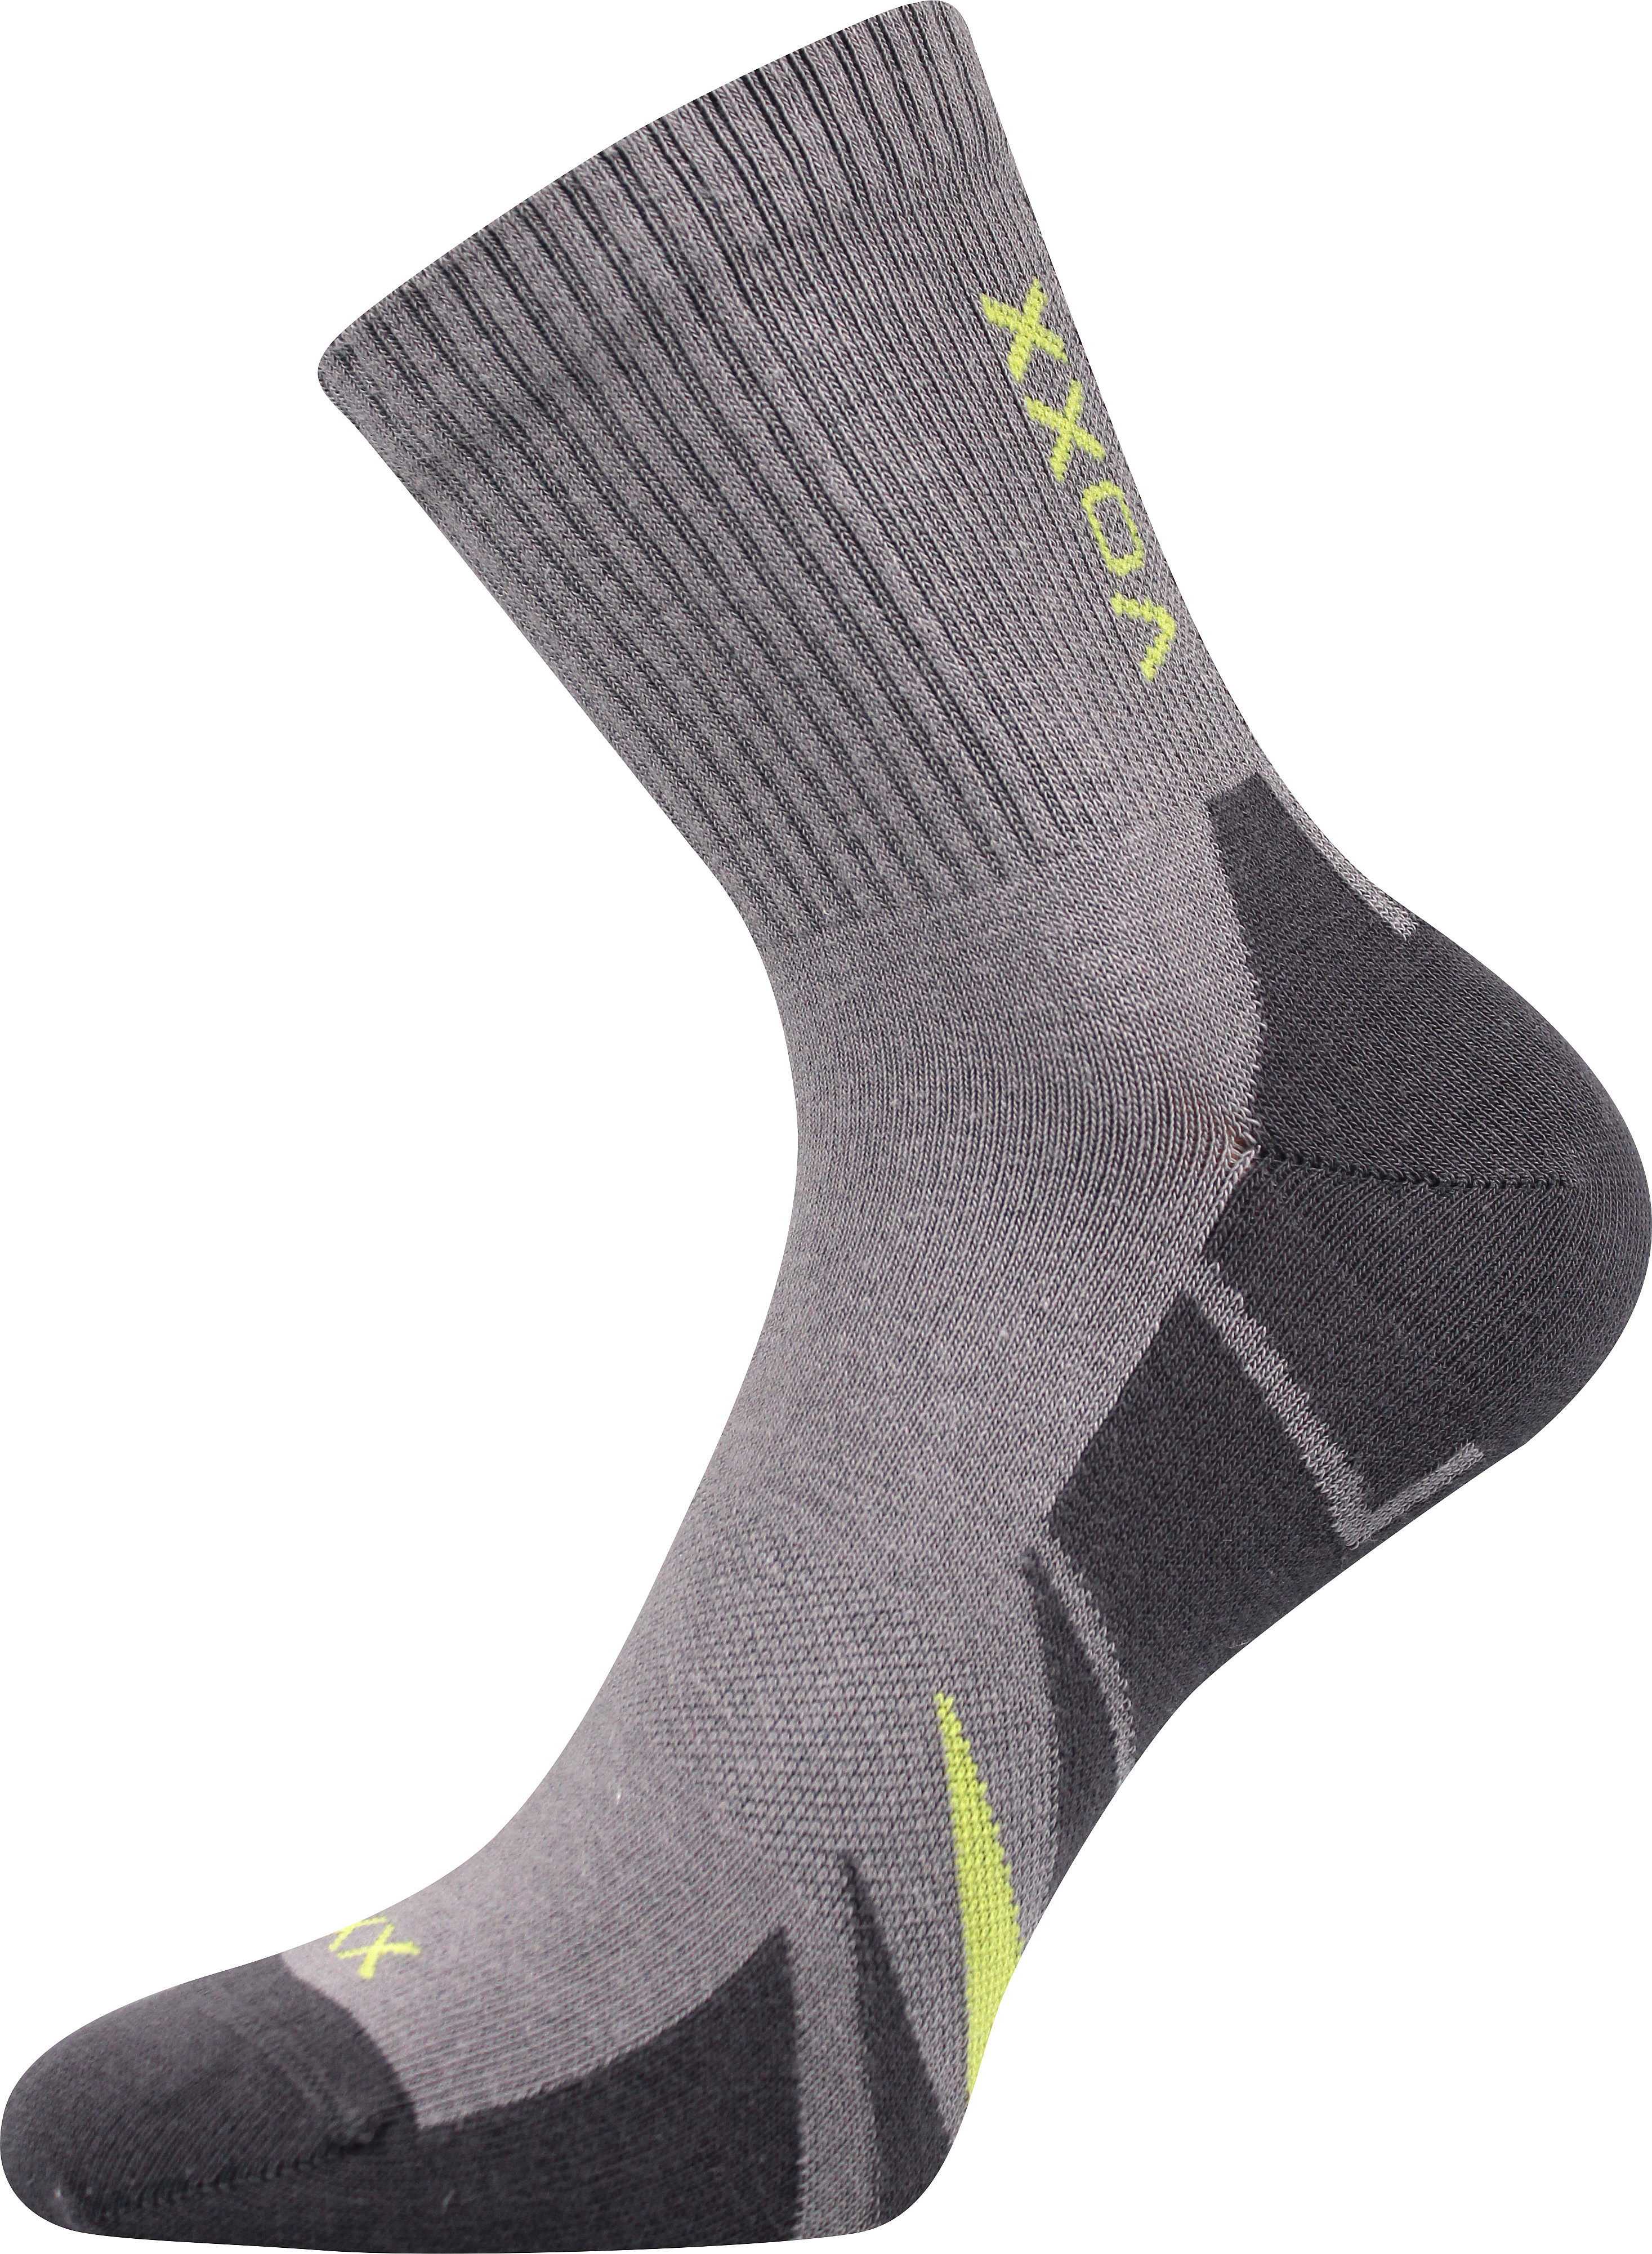 Ponožky sportovní Voxx Hermes - světle šedé-tmavě šedé, 39-42